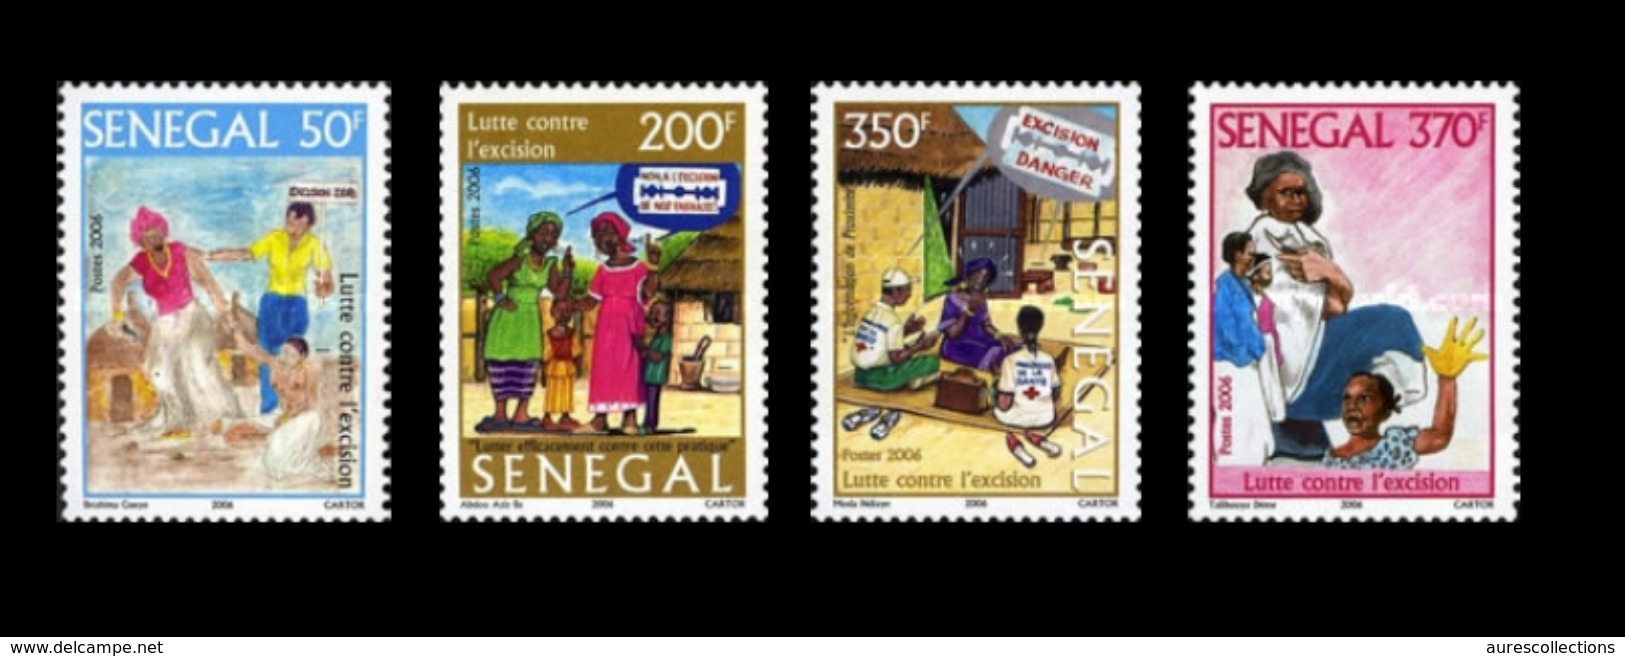 SENEGAL UNESCO 2006 LUTTE CONTRE L'EXCISION - FULL SET - RARE -  MNH ** - Senegal (1960-...)